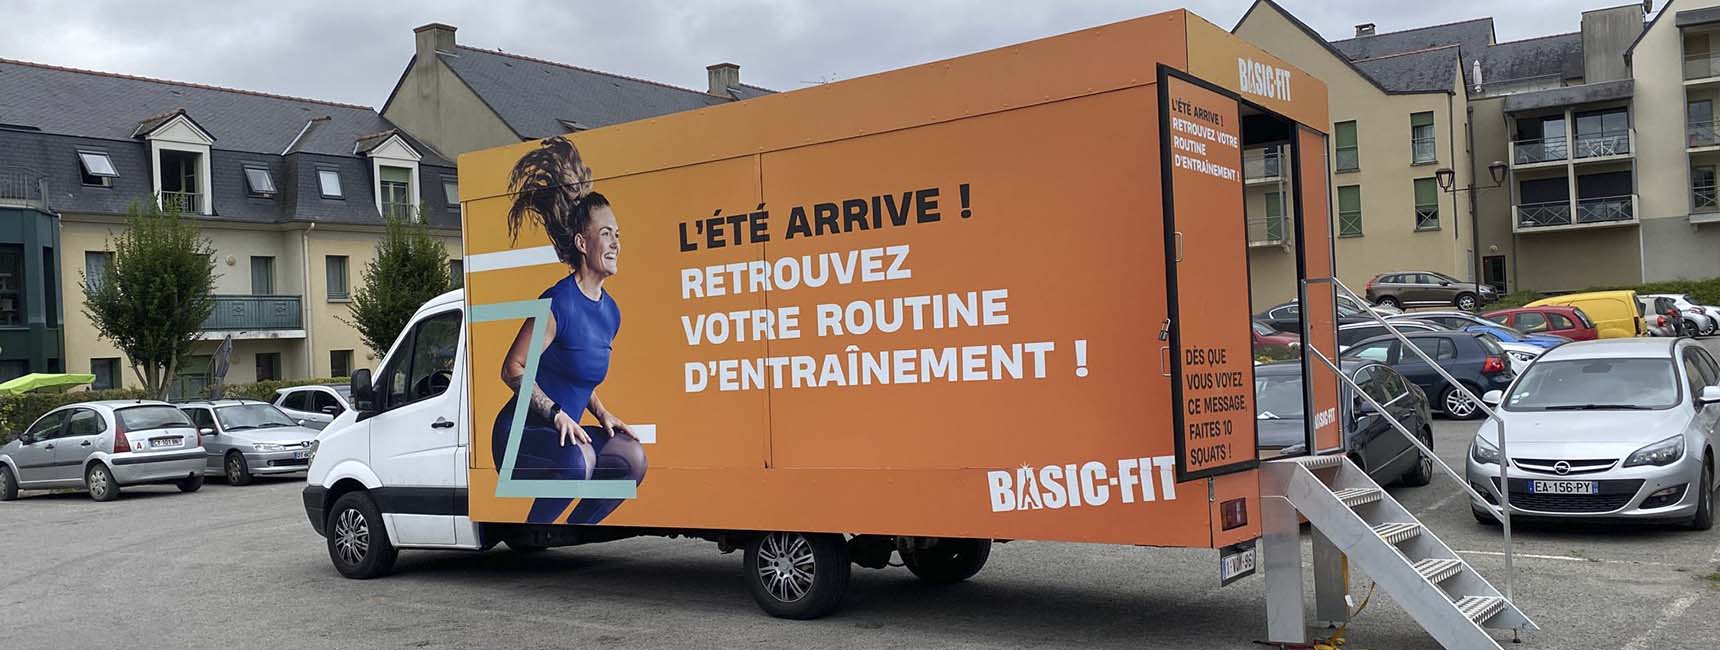 Du sport pour Basic Fit - Keemia Lille agence marketing locale région Hauts-de-France